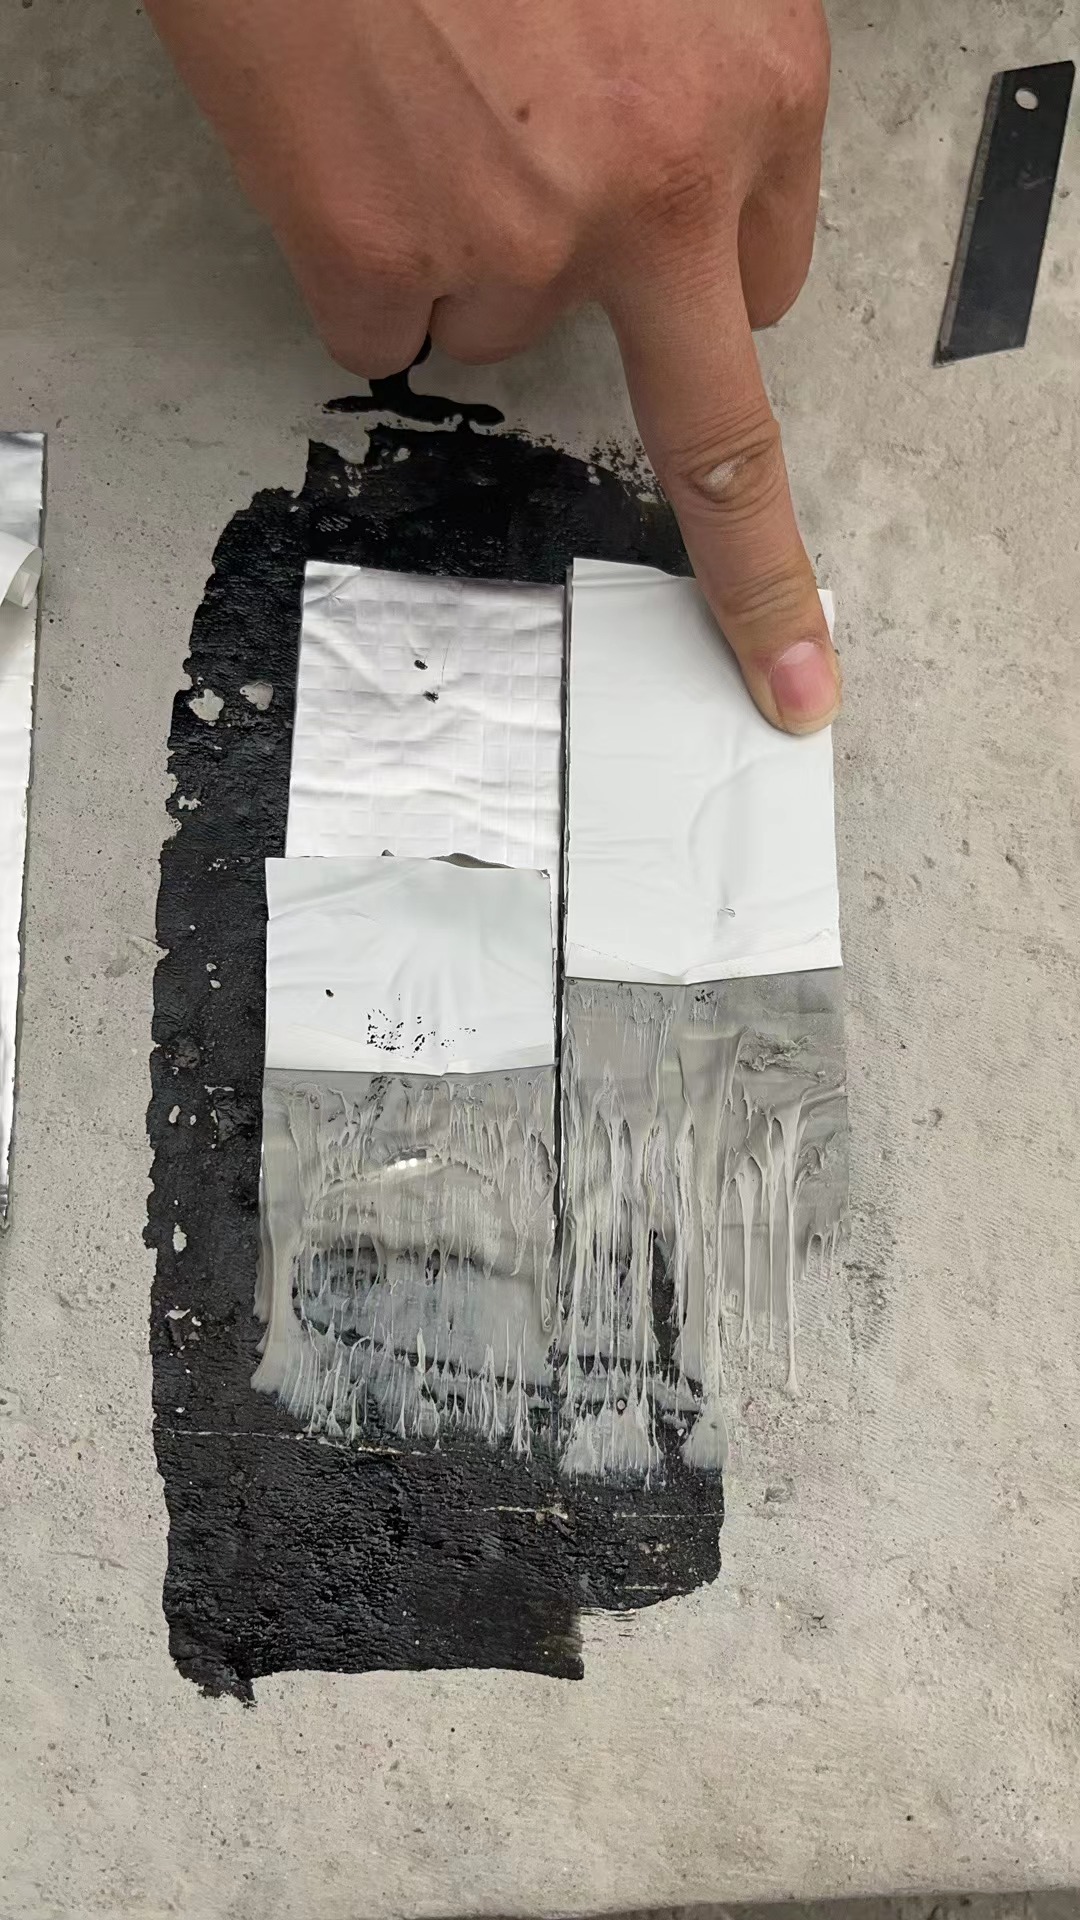 Adhesive test of aluminum foil tape